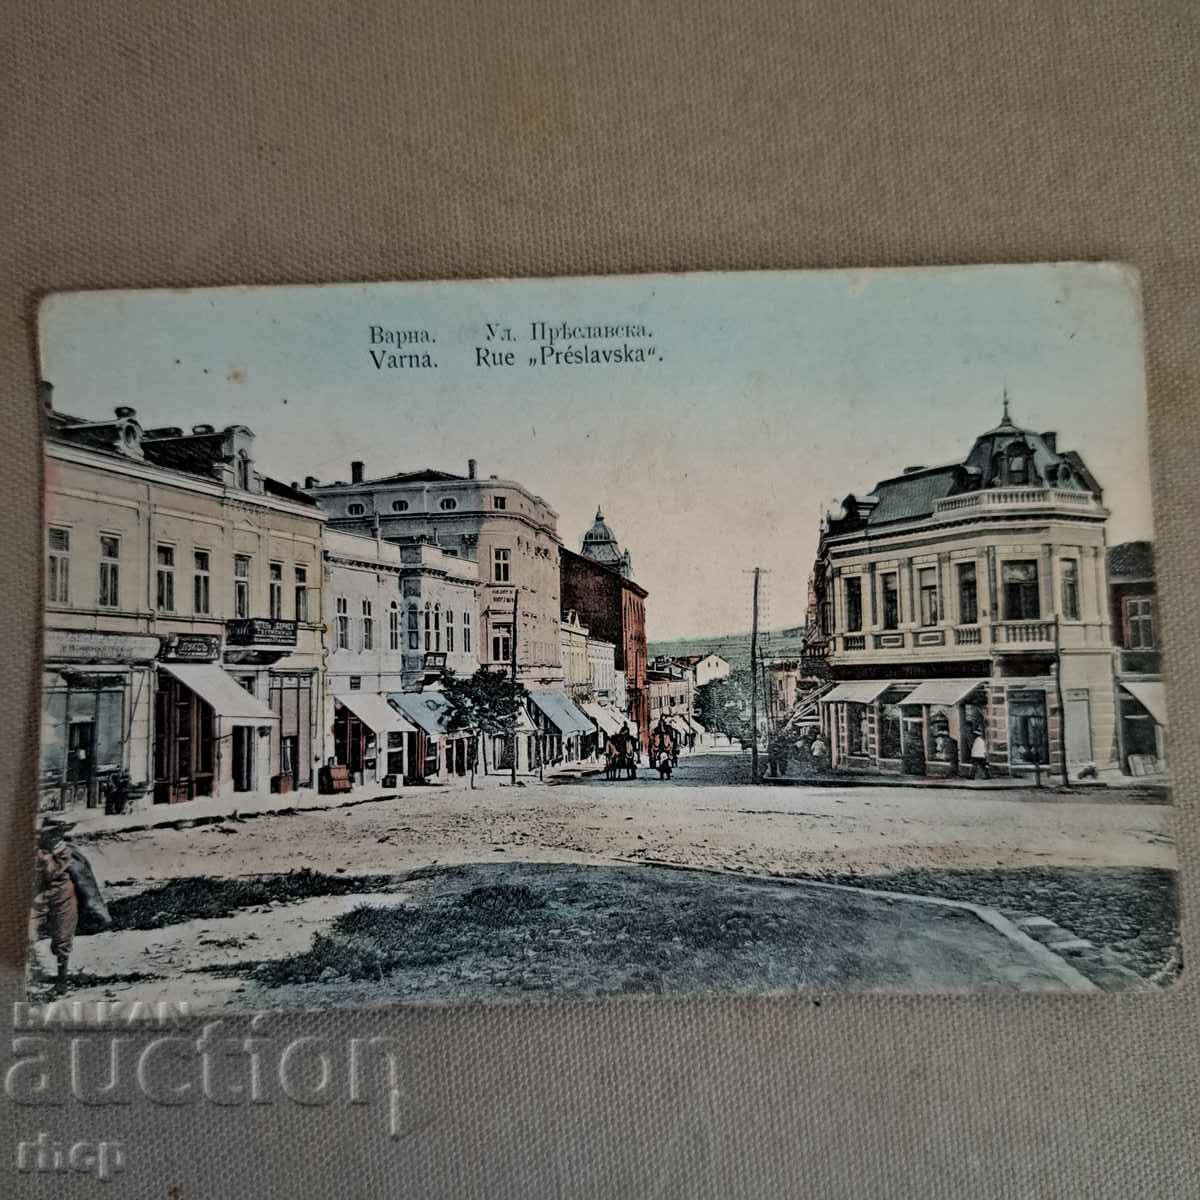 Βάρνα, οδός Preslavska, μια παλιά έγχρωμη κάρτα, αρχές του 20ου αιώνα